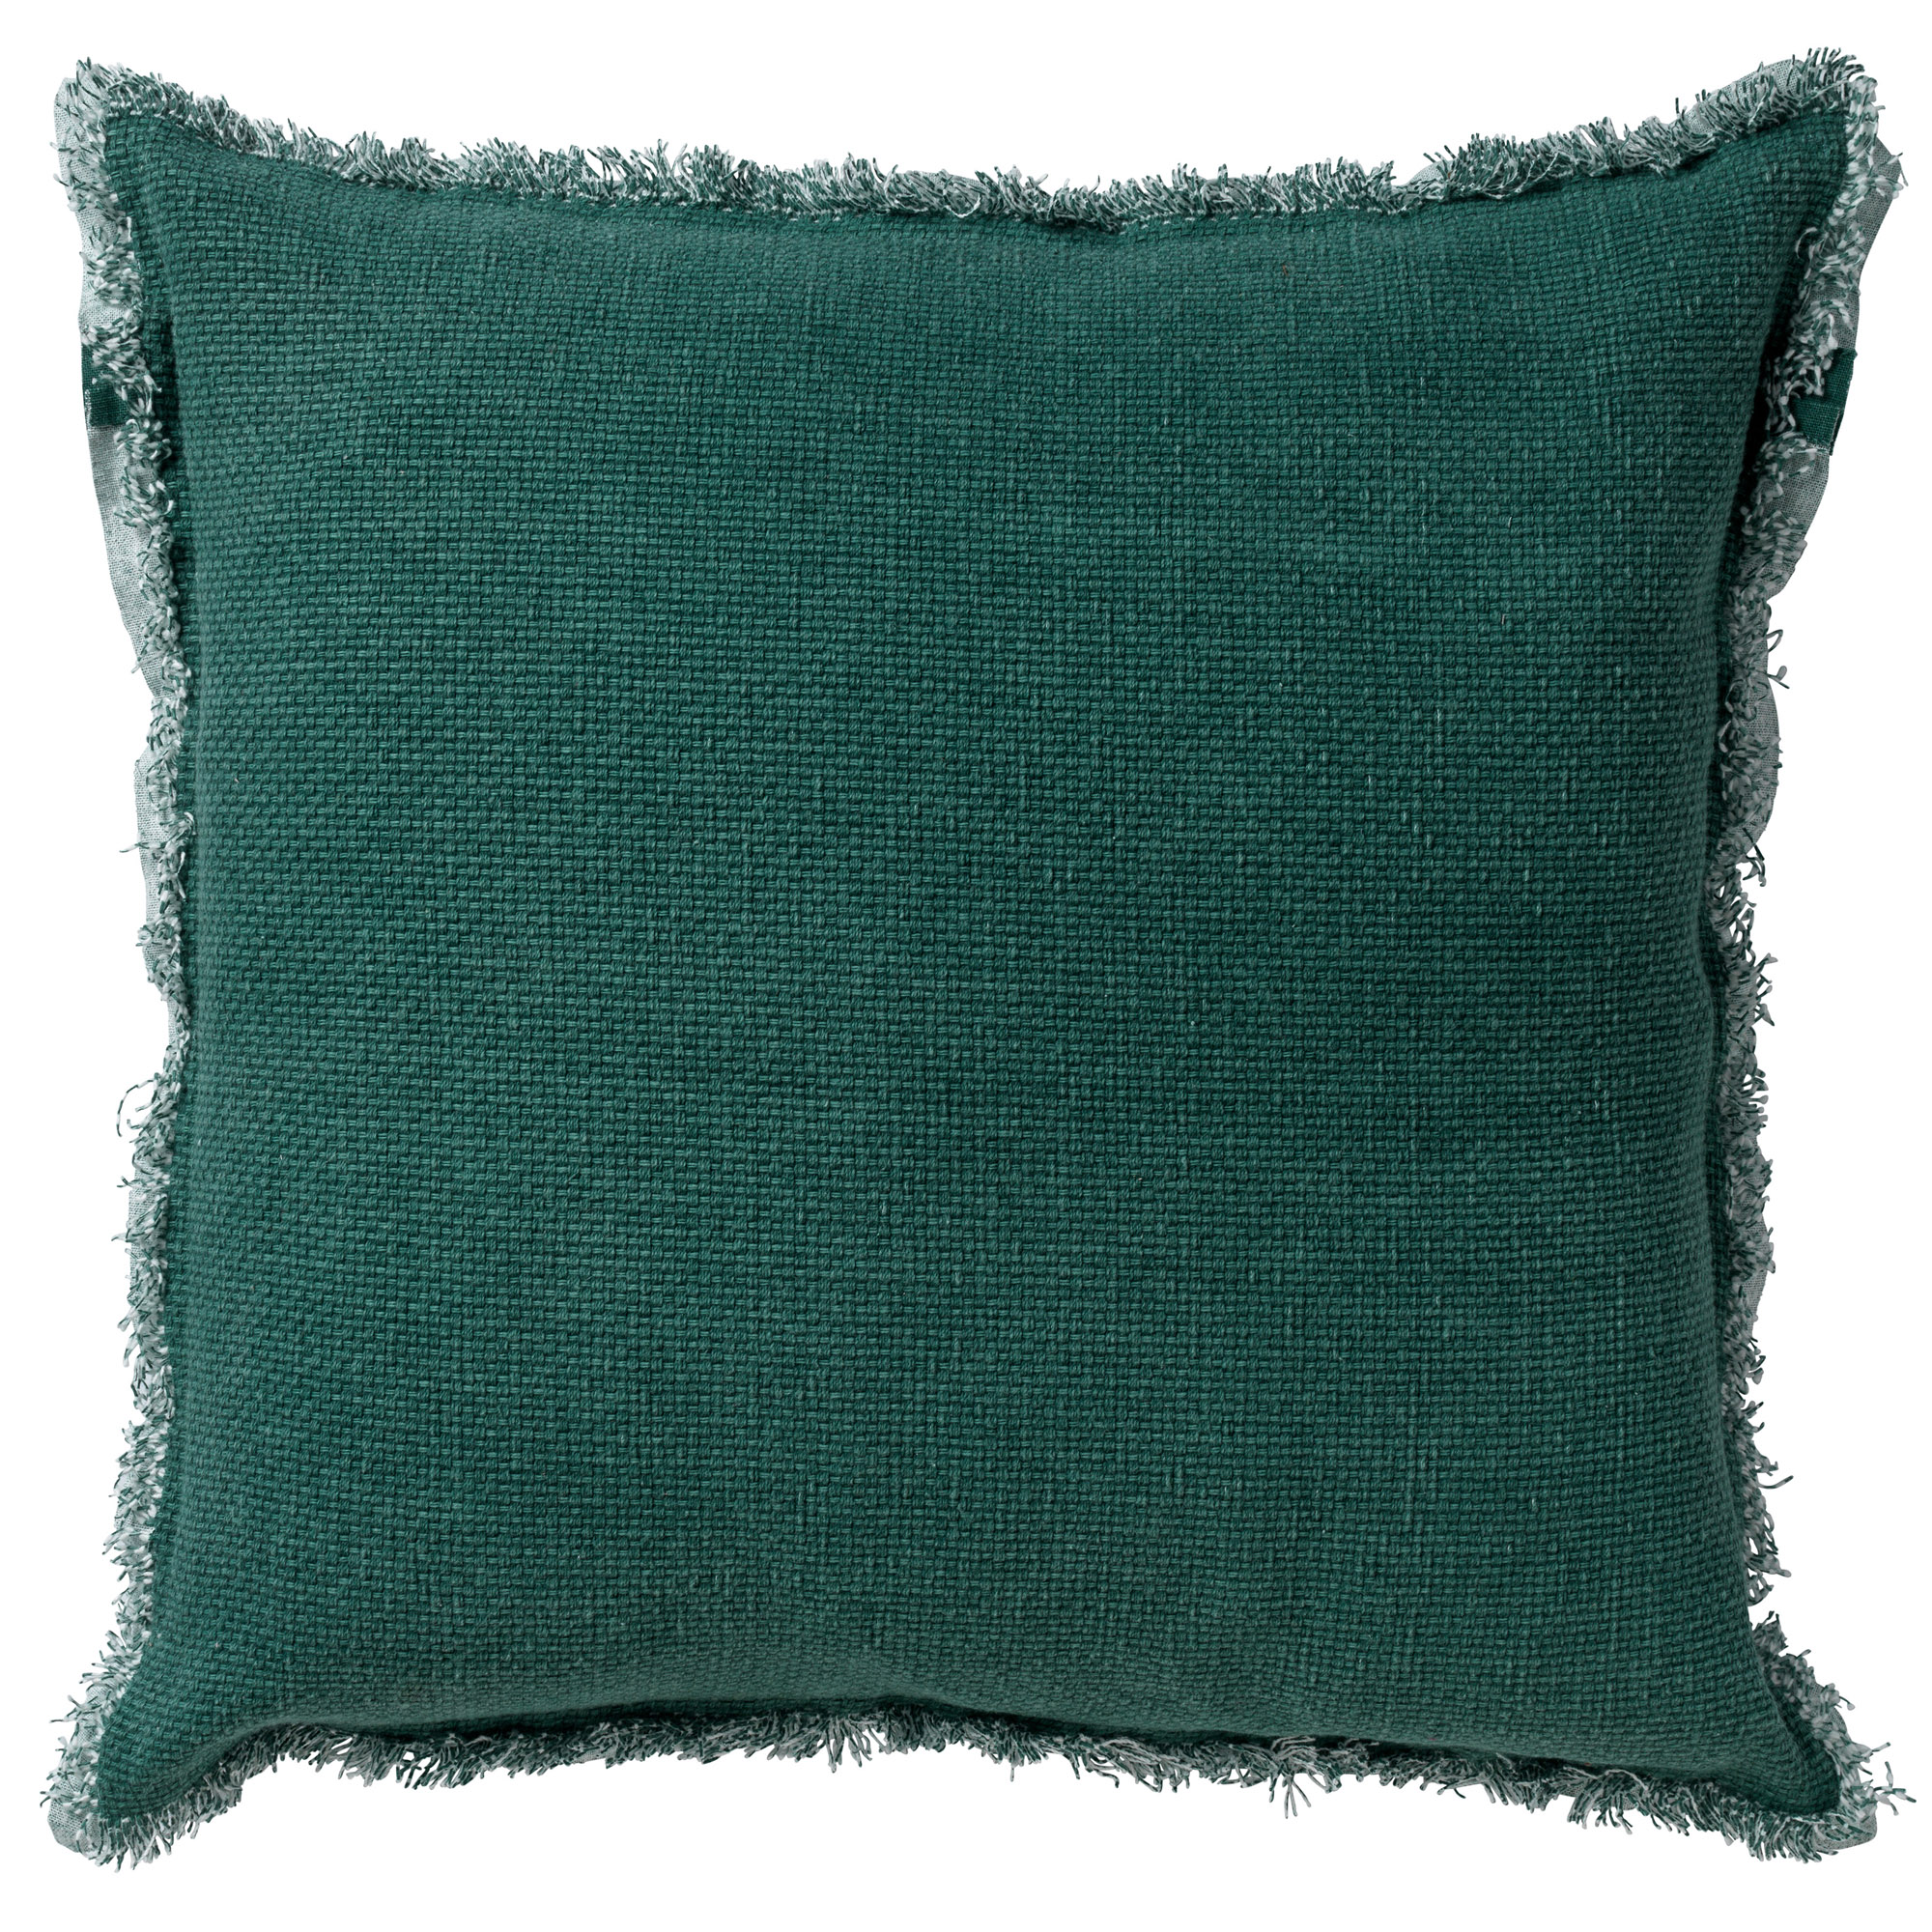 BURTO - Cushion 60x60 cm Sagebrush Green - green